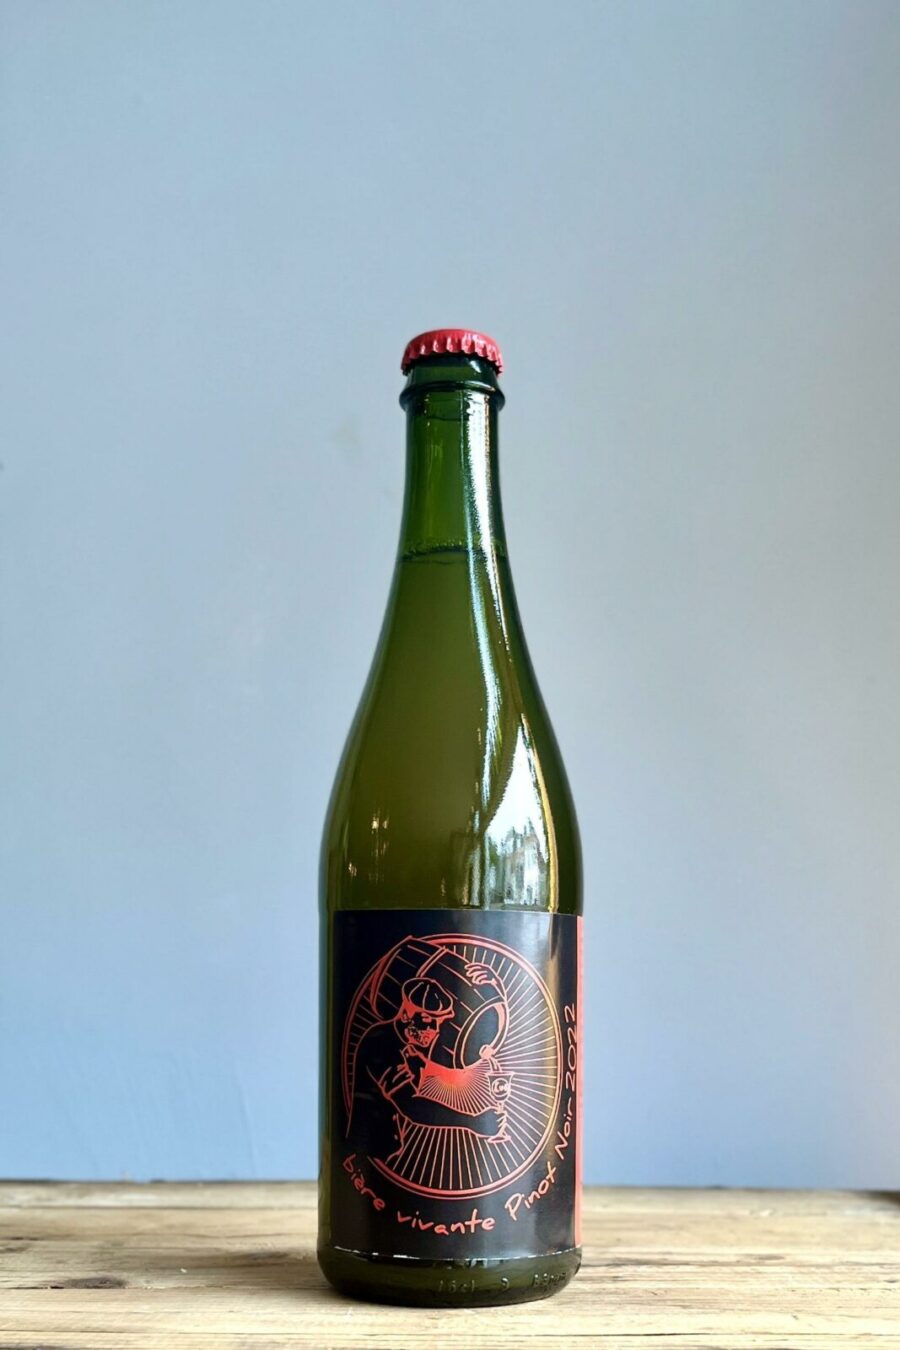 Craft beer speciaalbier zuur bier blond bier sour ale Yann durieux recrue des Sens bourgogne Savoie